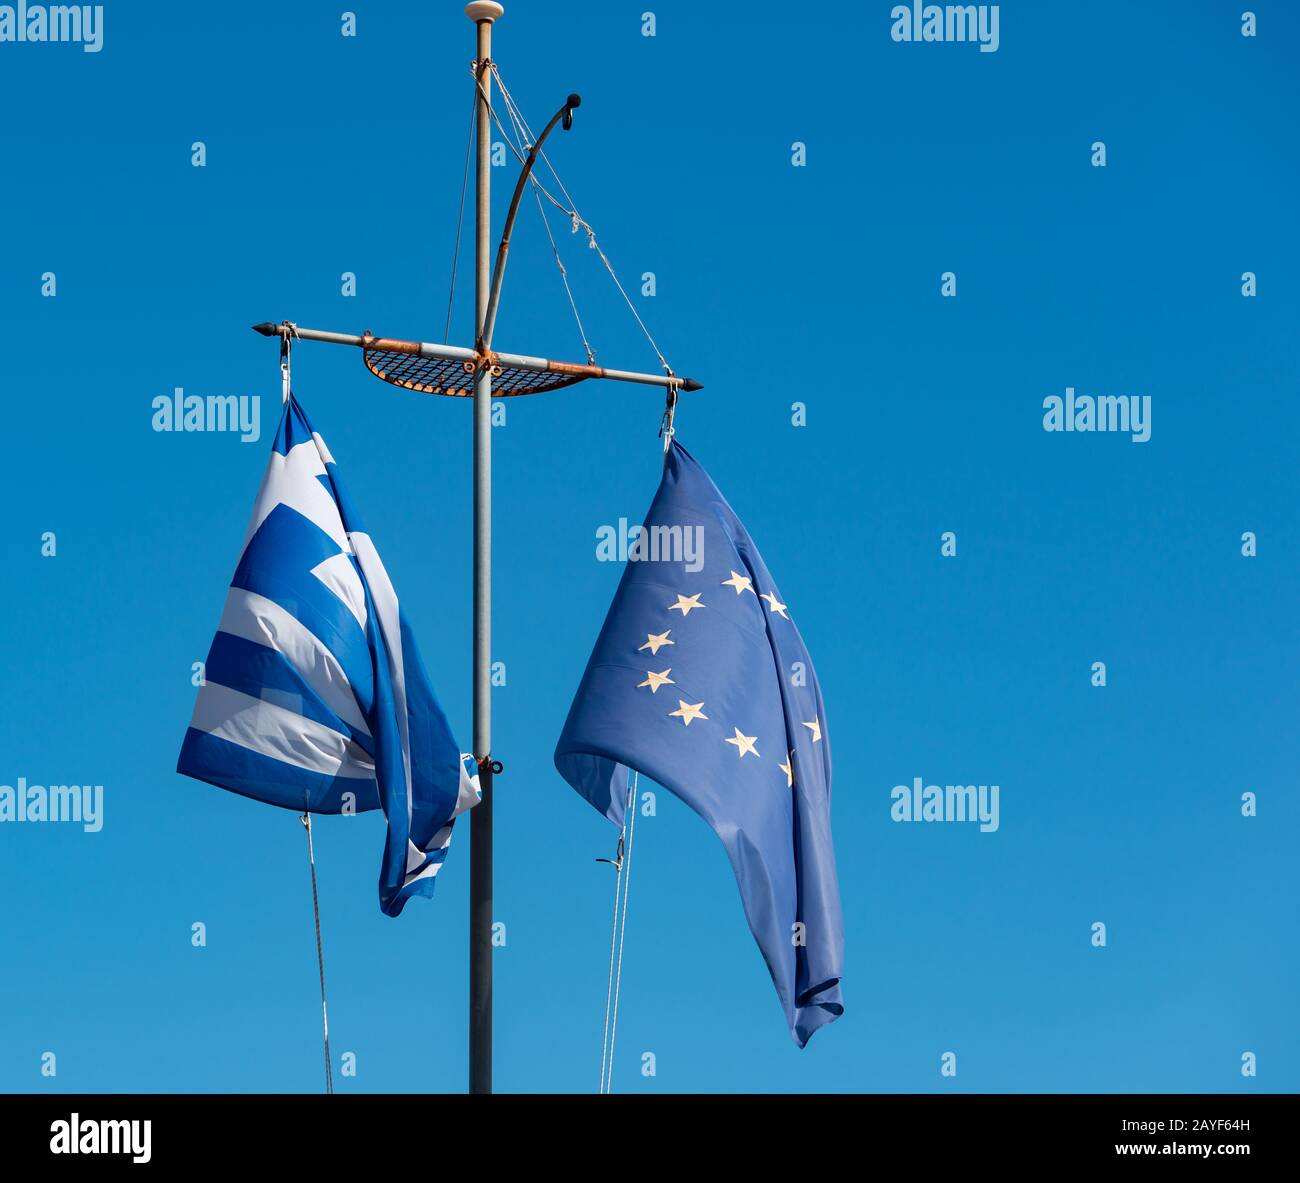 Drapeau de la Grèce et drapeau de l'Europe contre un ciel bleu Banque D'Images